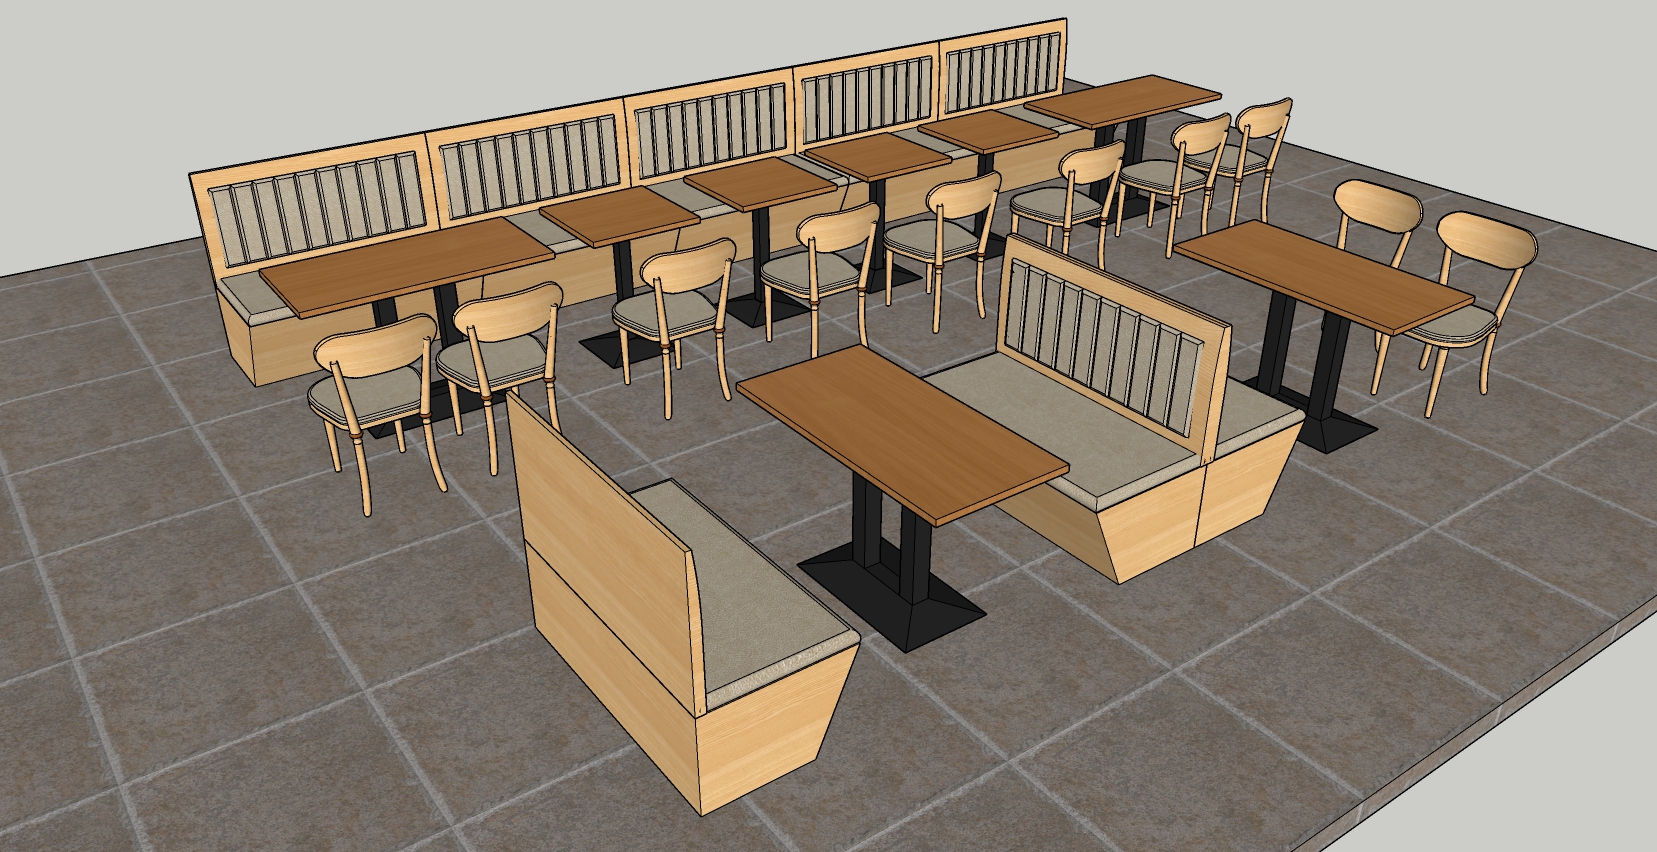 快餐店   咖啡店   餐馆桌椅摆设   沙发椅子  椅子  桌子